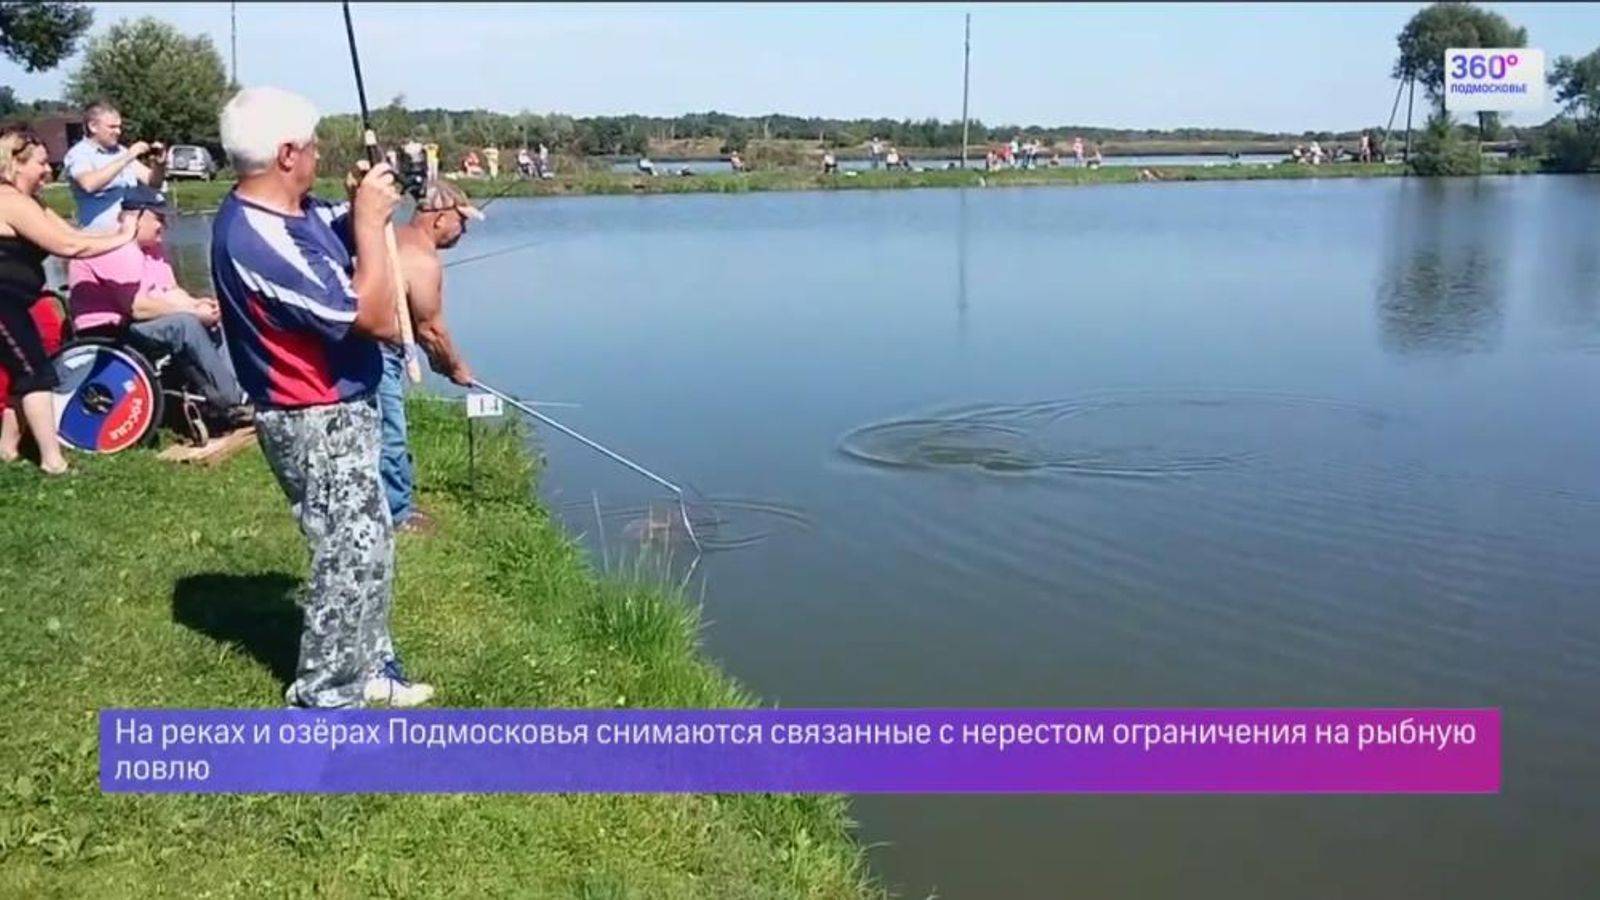 Рыбалка в апреле в московской области и подмосковье, советы по ловле рыбы